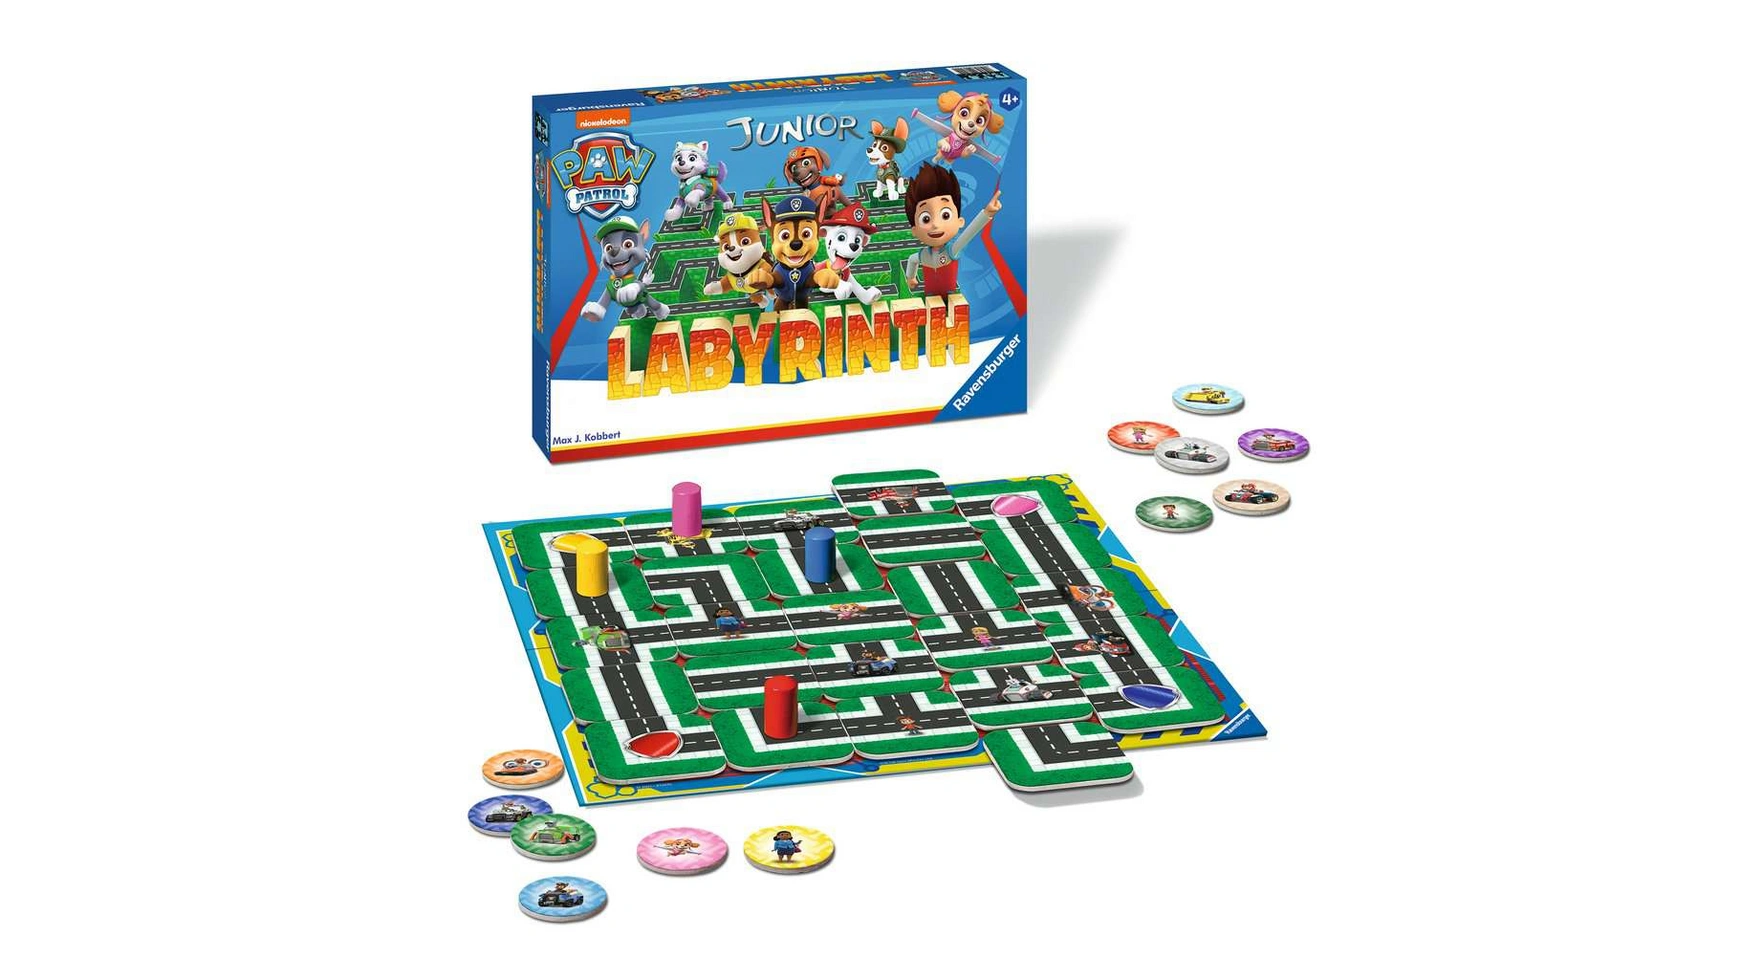 Ravensburger Spiele Paw Patrol Junior Labyrinth, известная настольная игра от Ravensburger в детской версии настольная игра spin master щенячий патруль 6044336